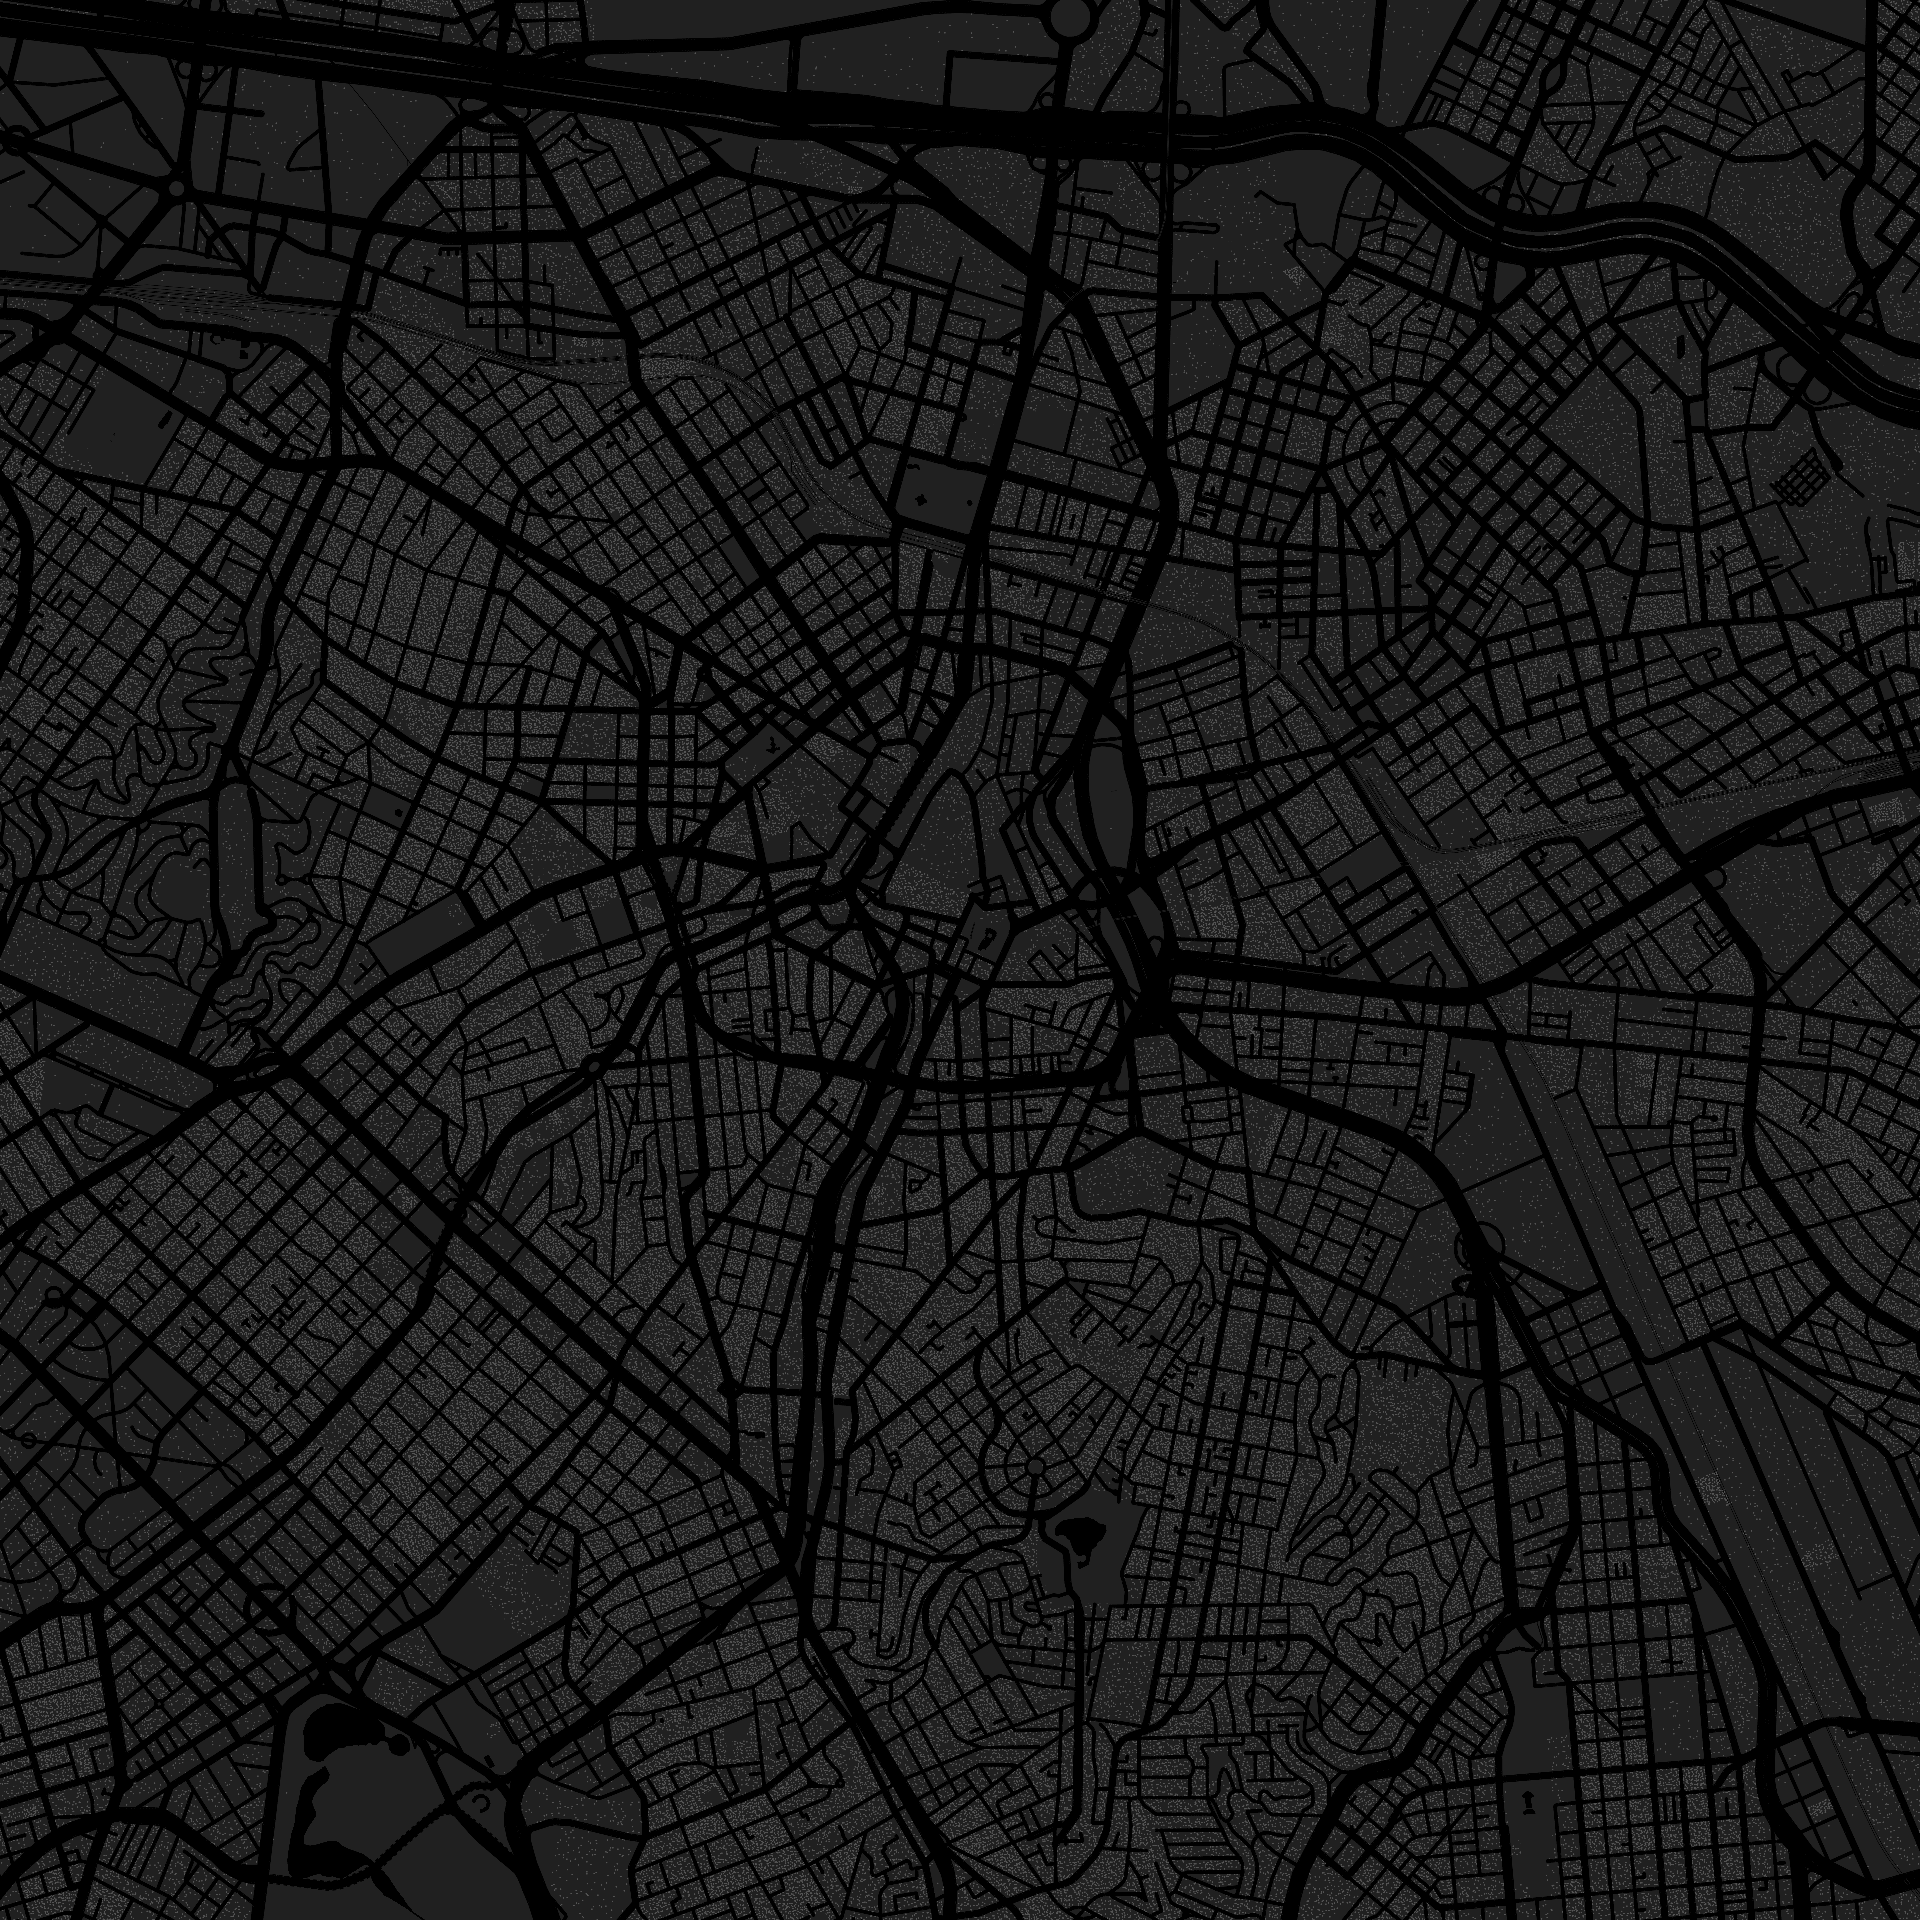 Apenas como exemplo, este mapa mostra uma região metropolitana com milhares de pontos espalhados (cada ponto representa uma pessoa que vive ali).